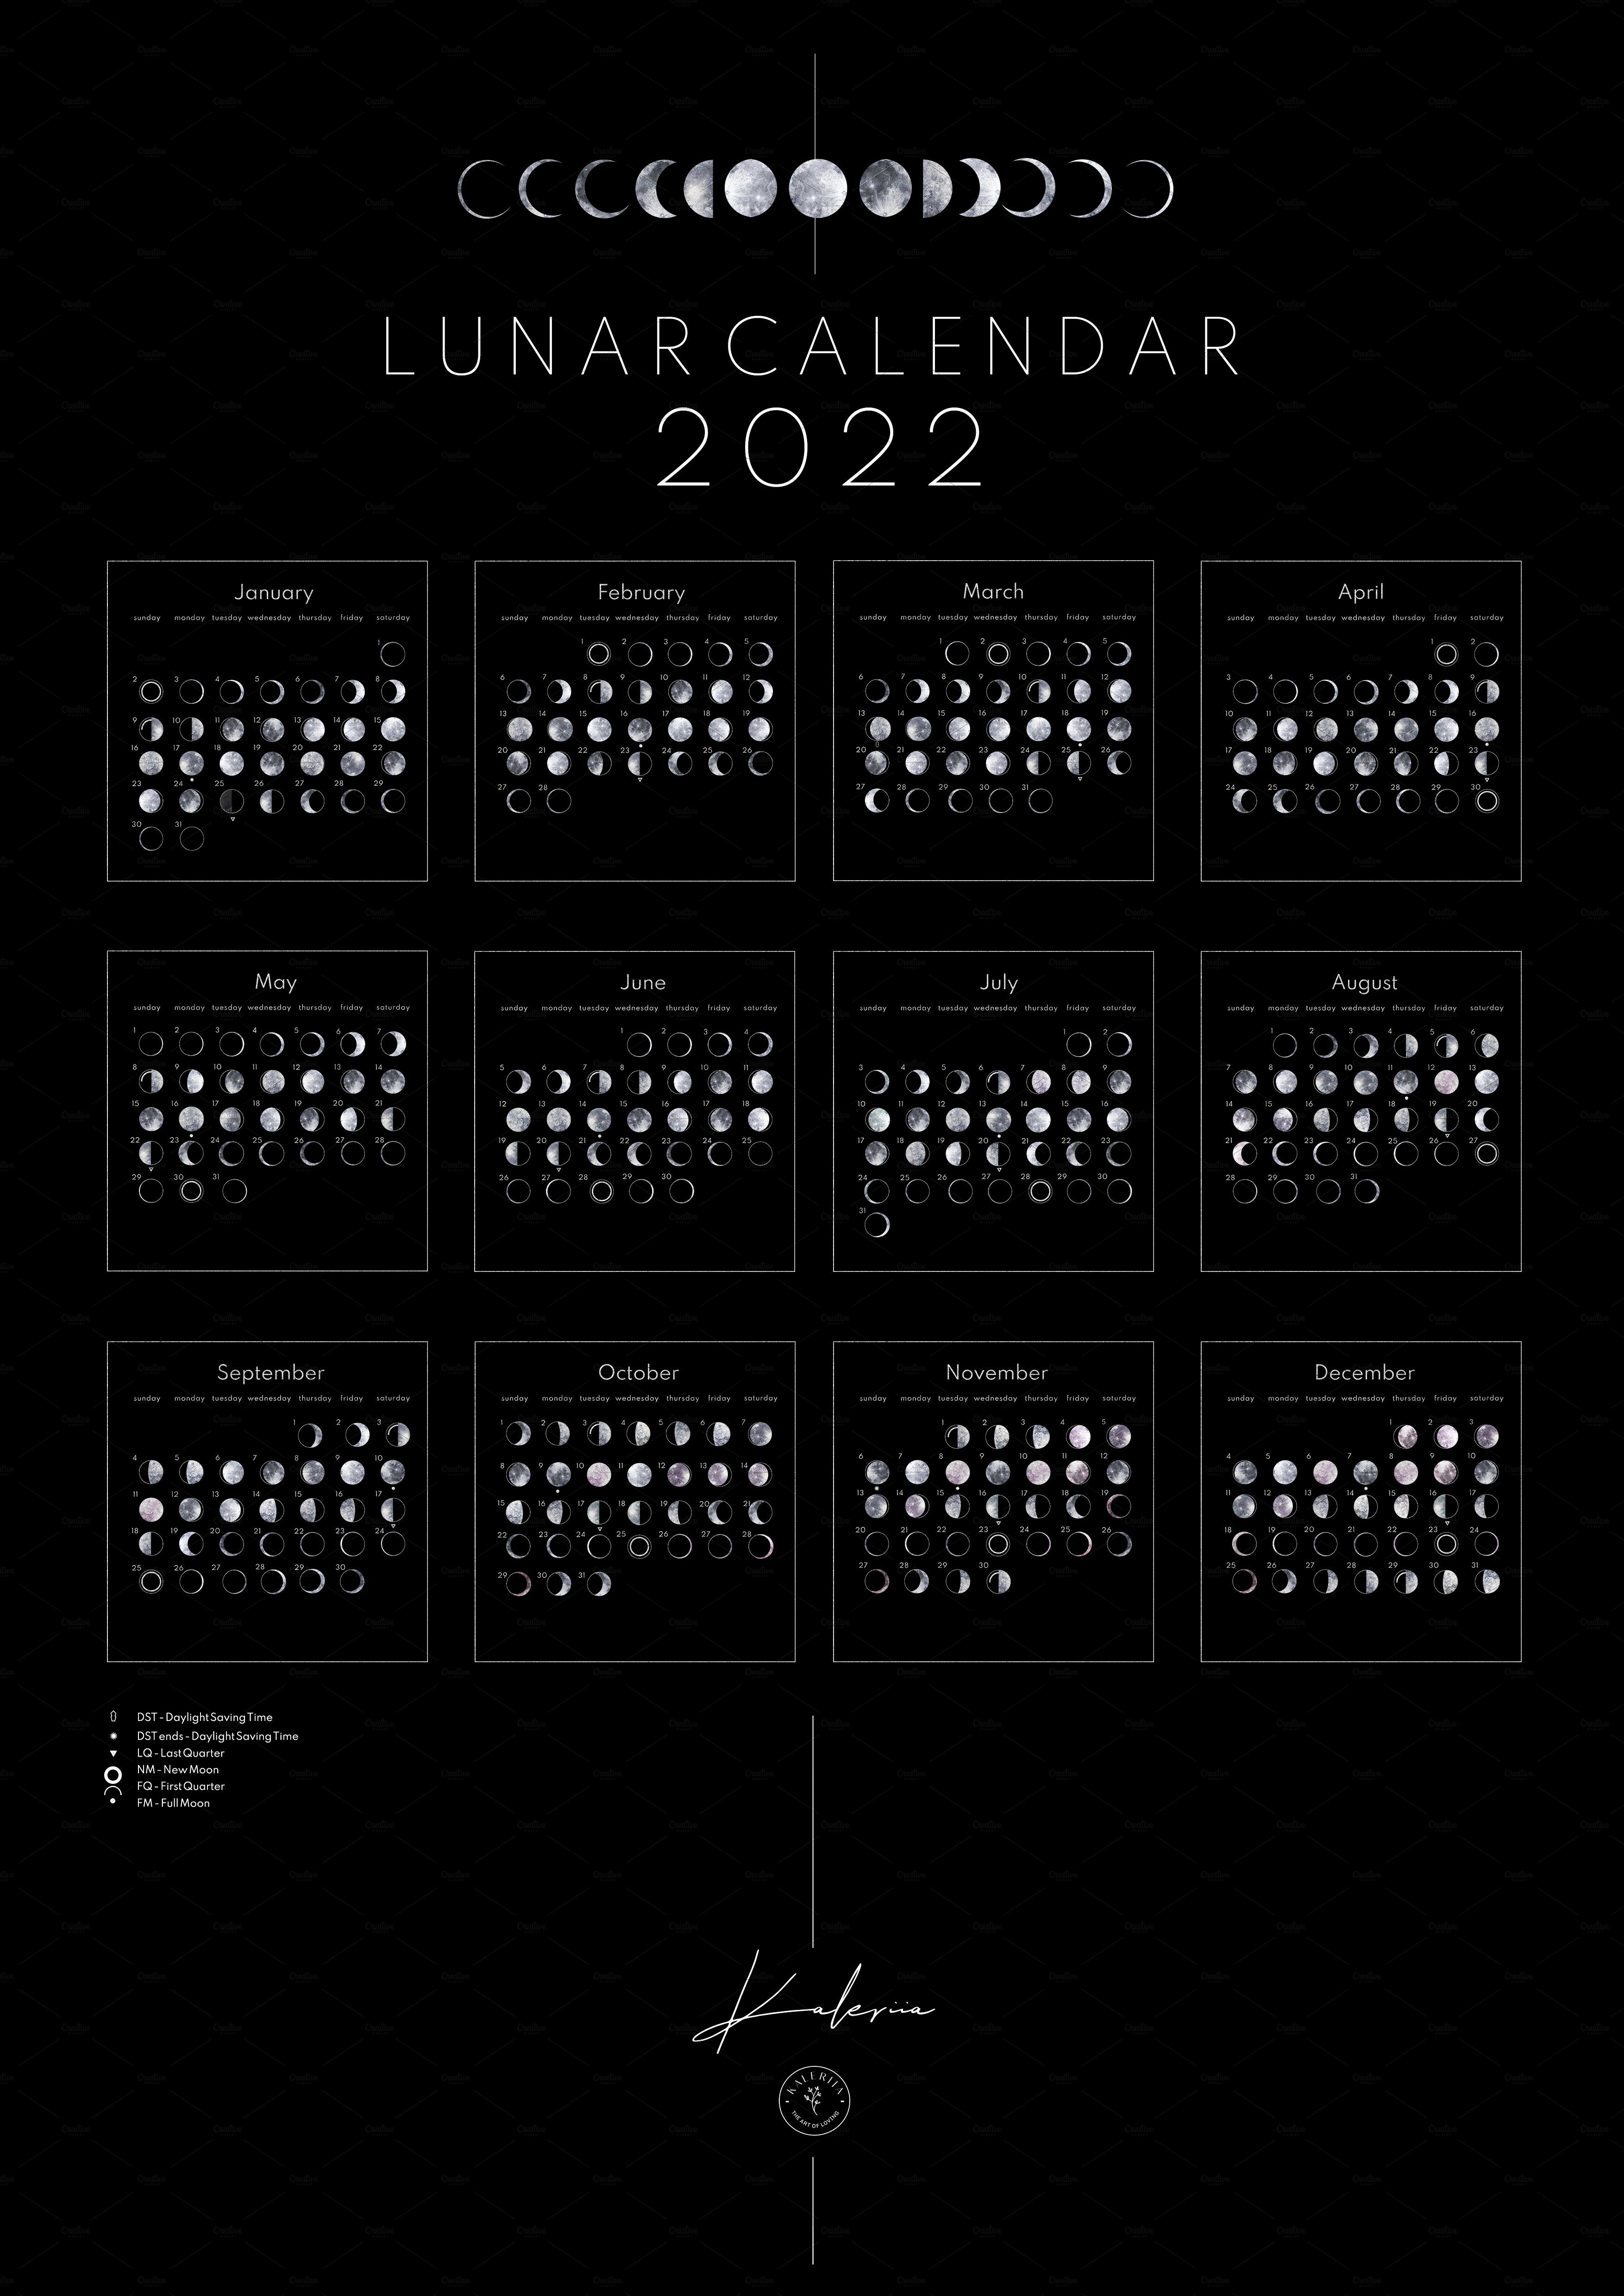 lunar calendar 300 dpi 764